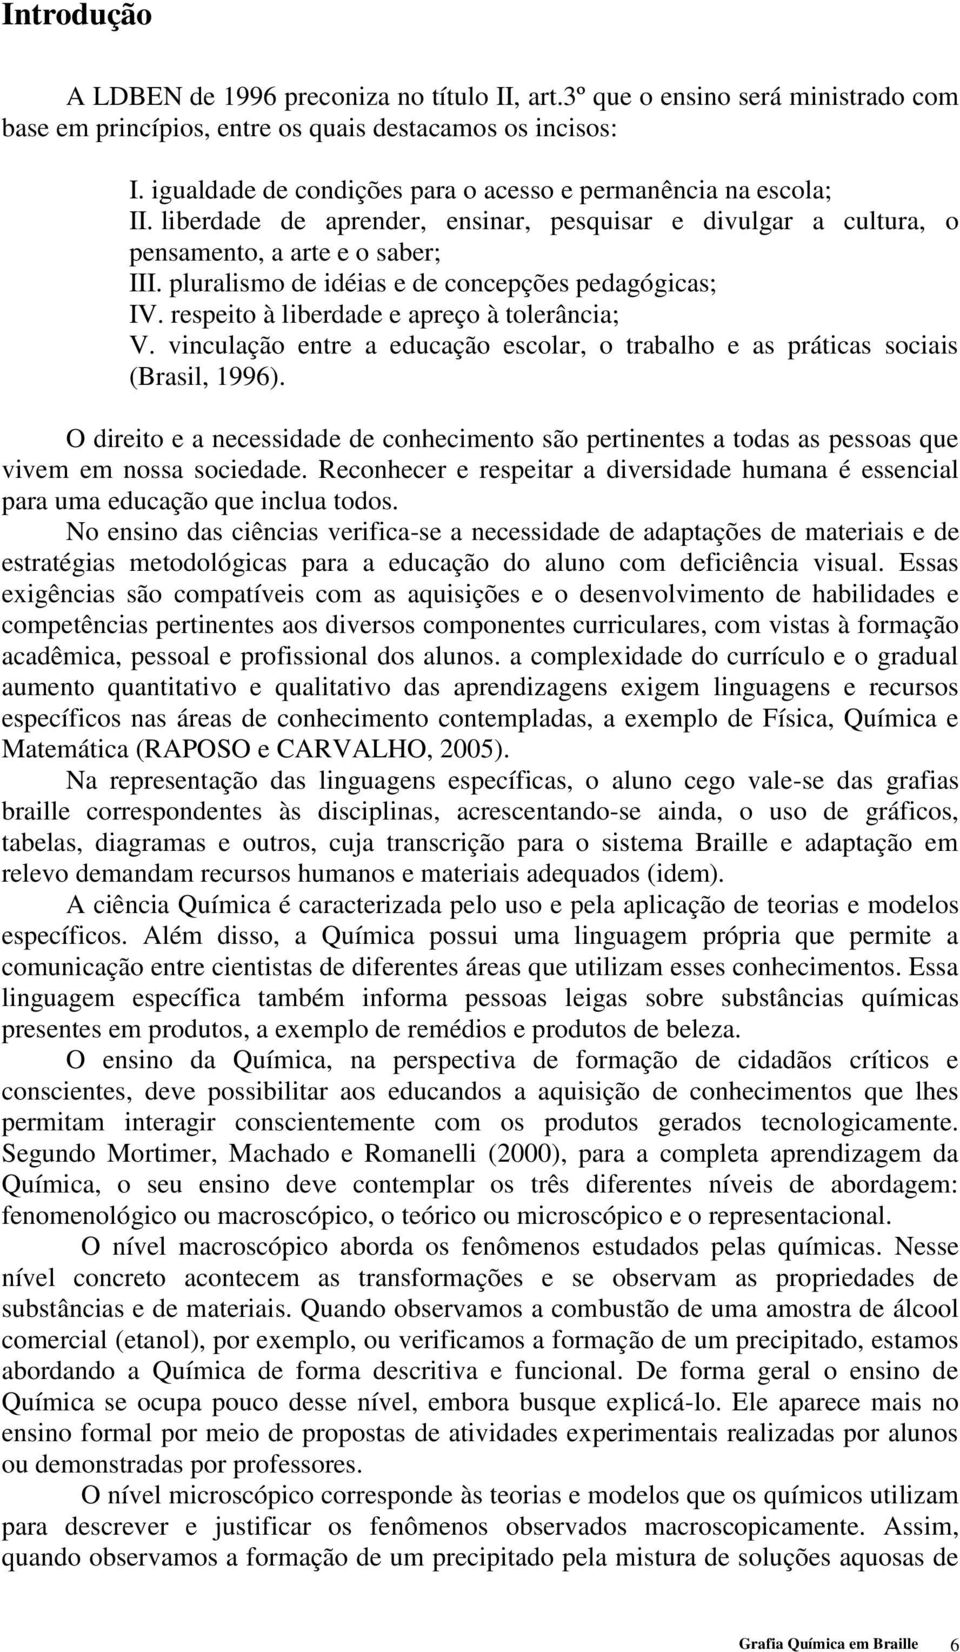 pluralismo de idéias e de concepções pedagógicas; IV. respeito à liberdade e apreço à tolerância; V. vinculação entre a educação escolar, o trabalho e as práticas sociais (Brasil, 1996).